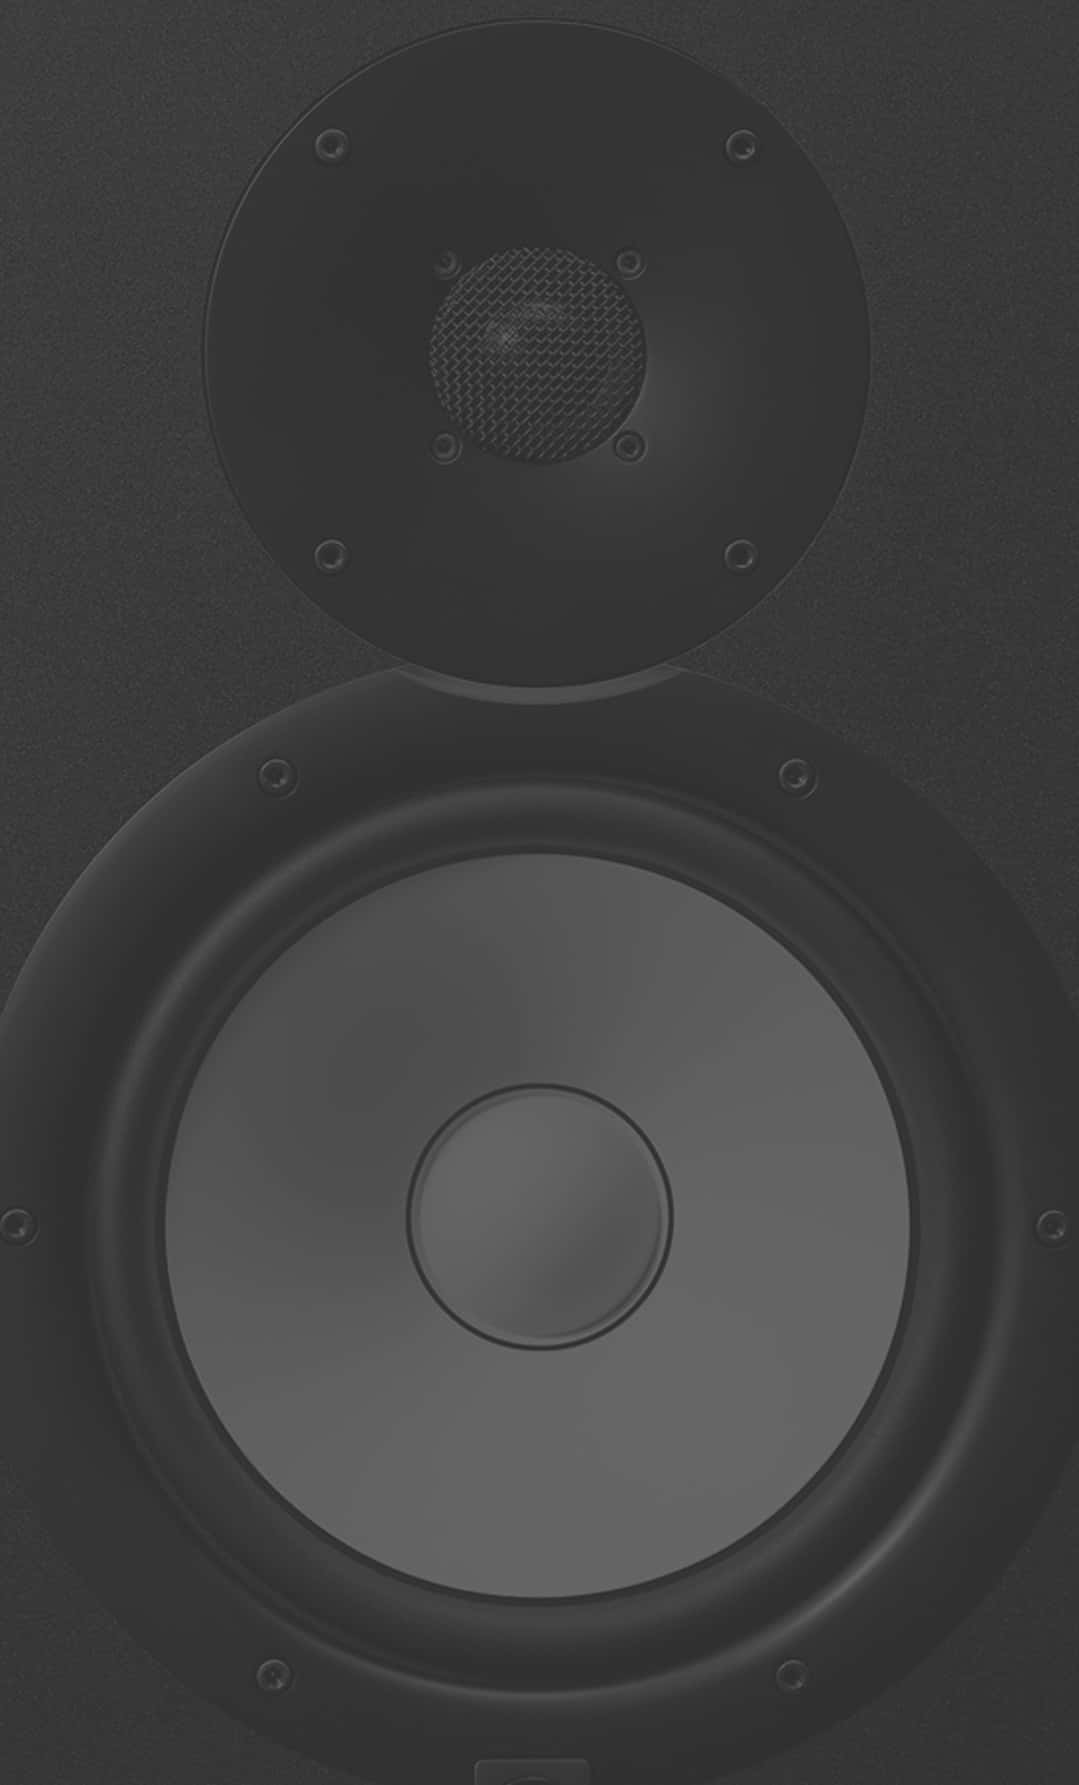 Einschwarzer Lautsprecher Mit Einem Schwarzen Kegel Wallpaper